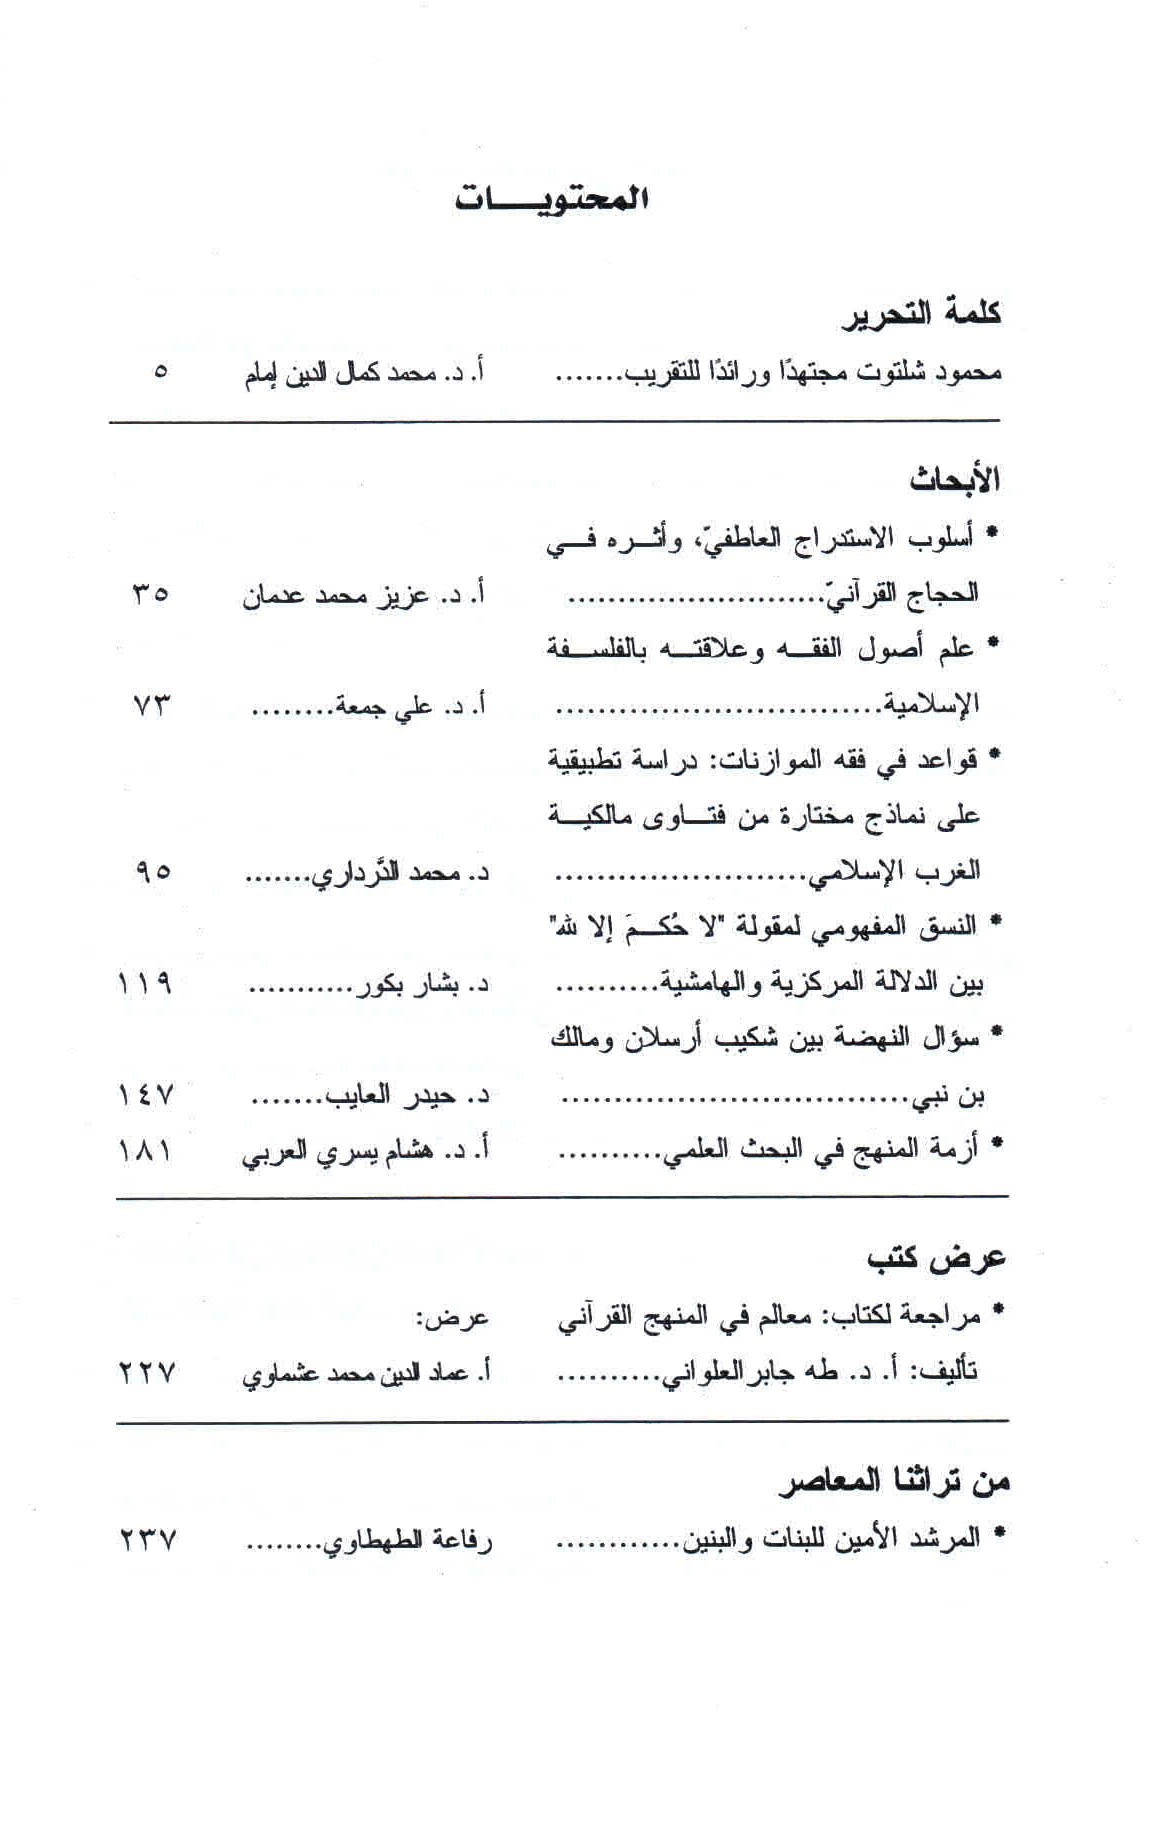 قائمة محتويات العدد 178- 179 مجلة المسلم المعاصر.